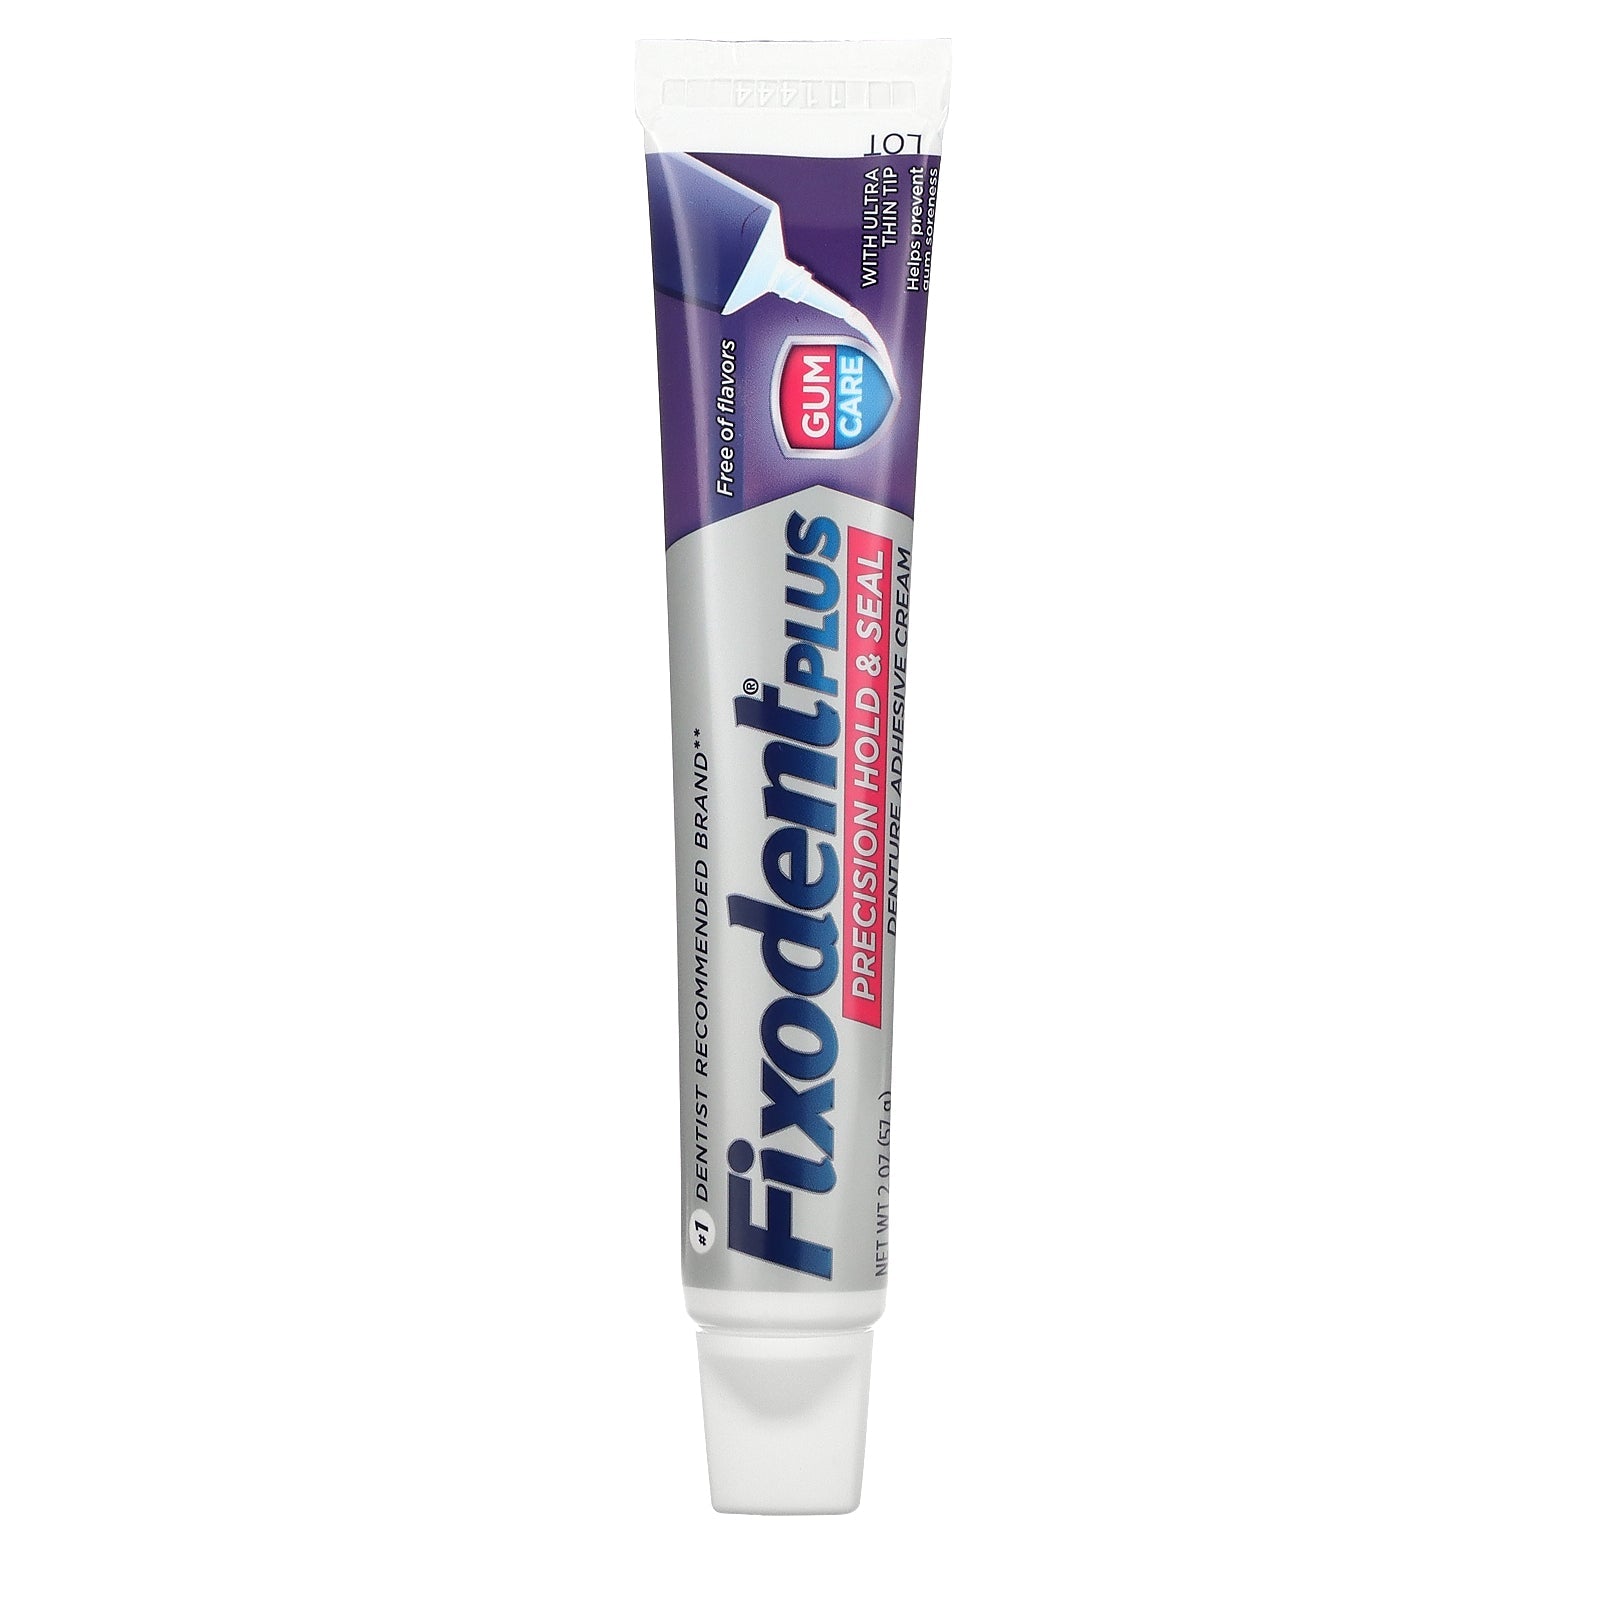 Fixodent Plus Denture Adhesive Cream Gum Care - 2 oz